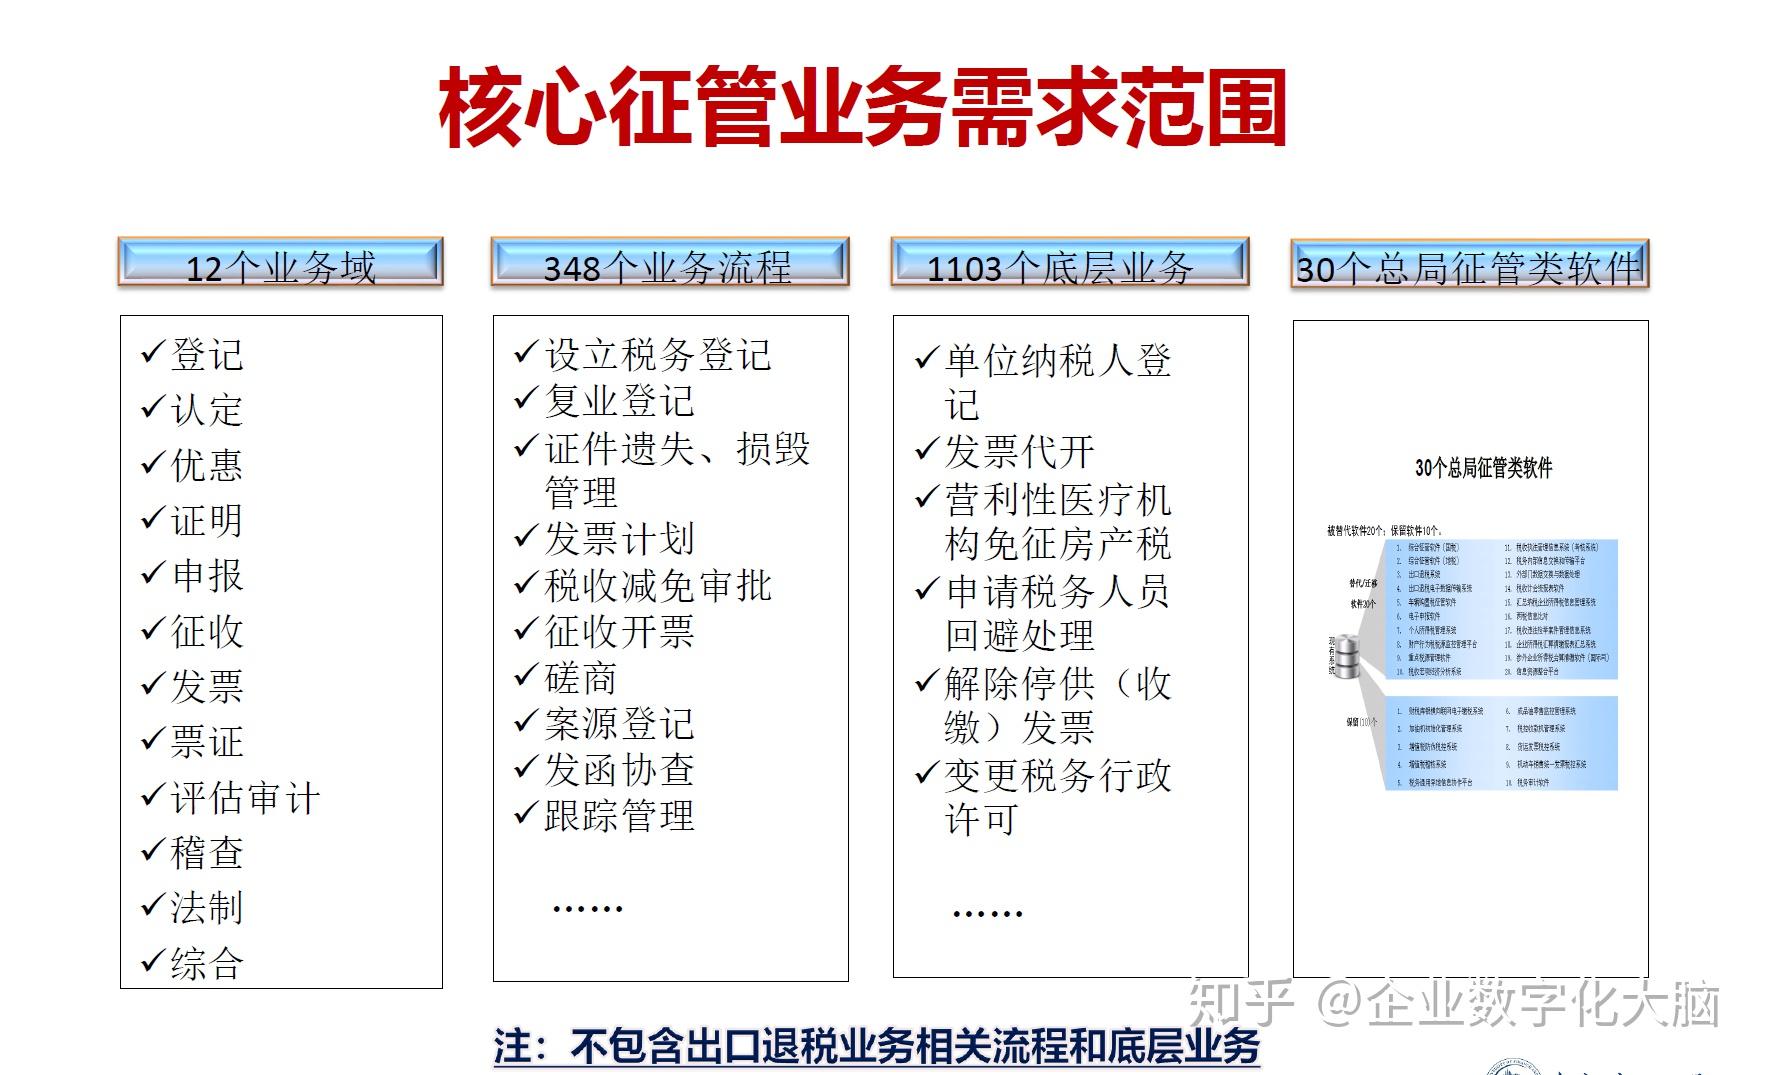 金税工程: 中国税收管理信息系统